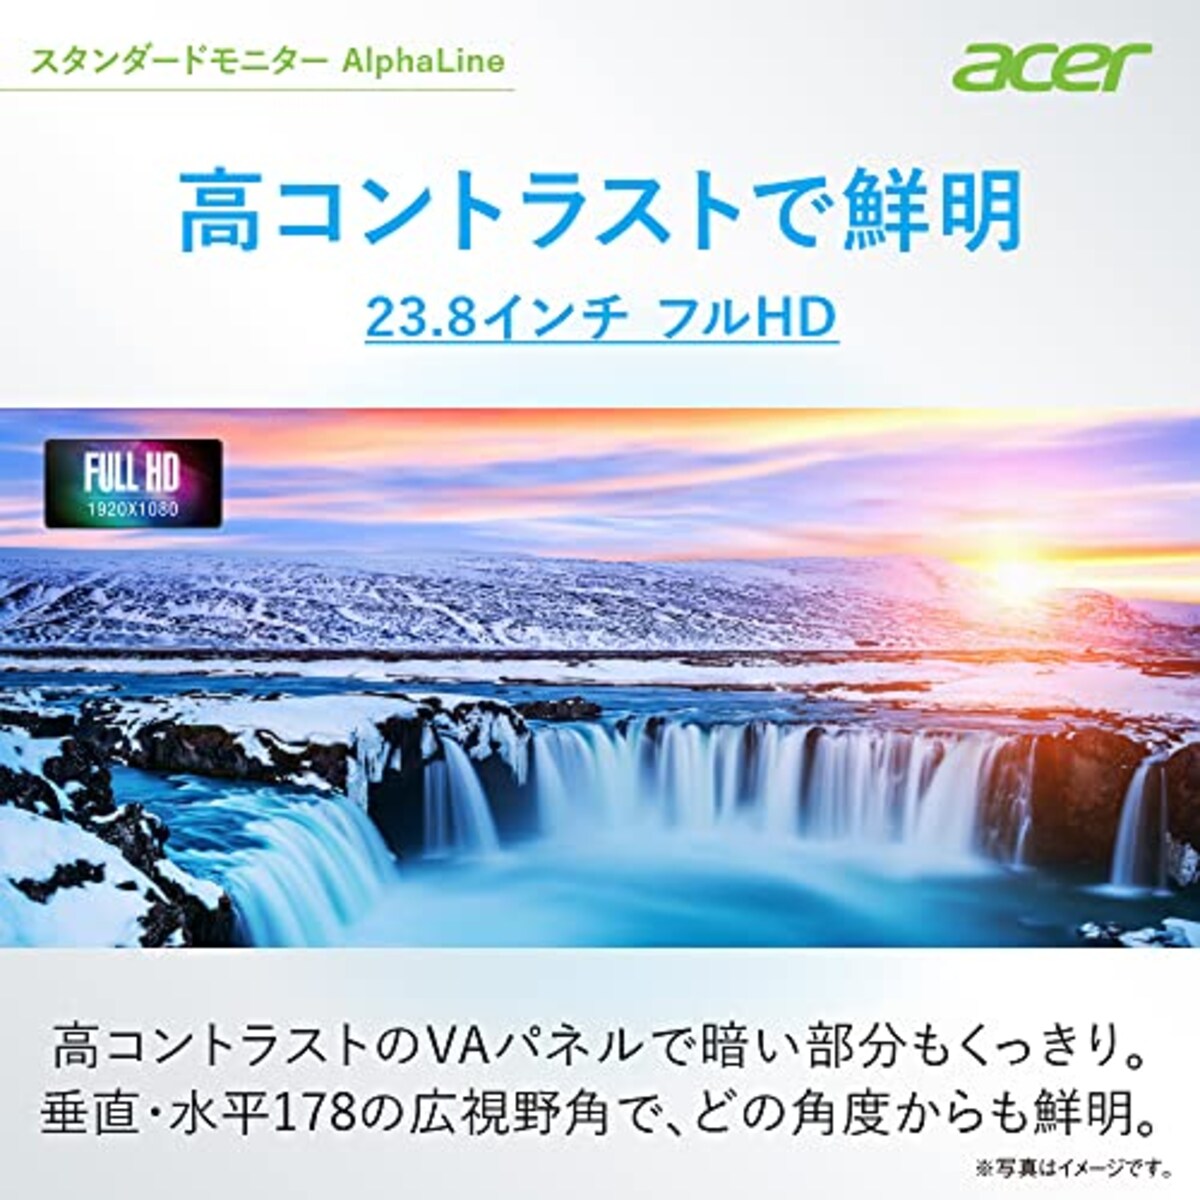  Acer モニター AlphaLine CBA242YAbmirx 23.8インチ VA 非光沢 フルHD 75Hz/1ms (VRB)HDMI ミニD-Sub 15 VESAマウント対応 スピーカー内蔵 高さ調整 チルト スイベル ピボッド機能 広い視野角178° フリッカーレス ブルーライト軽減 フレームレスデザイン画像2 